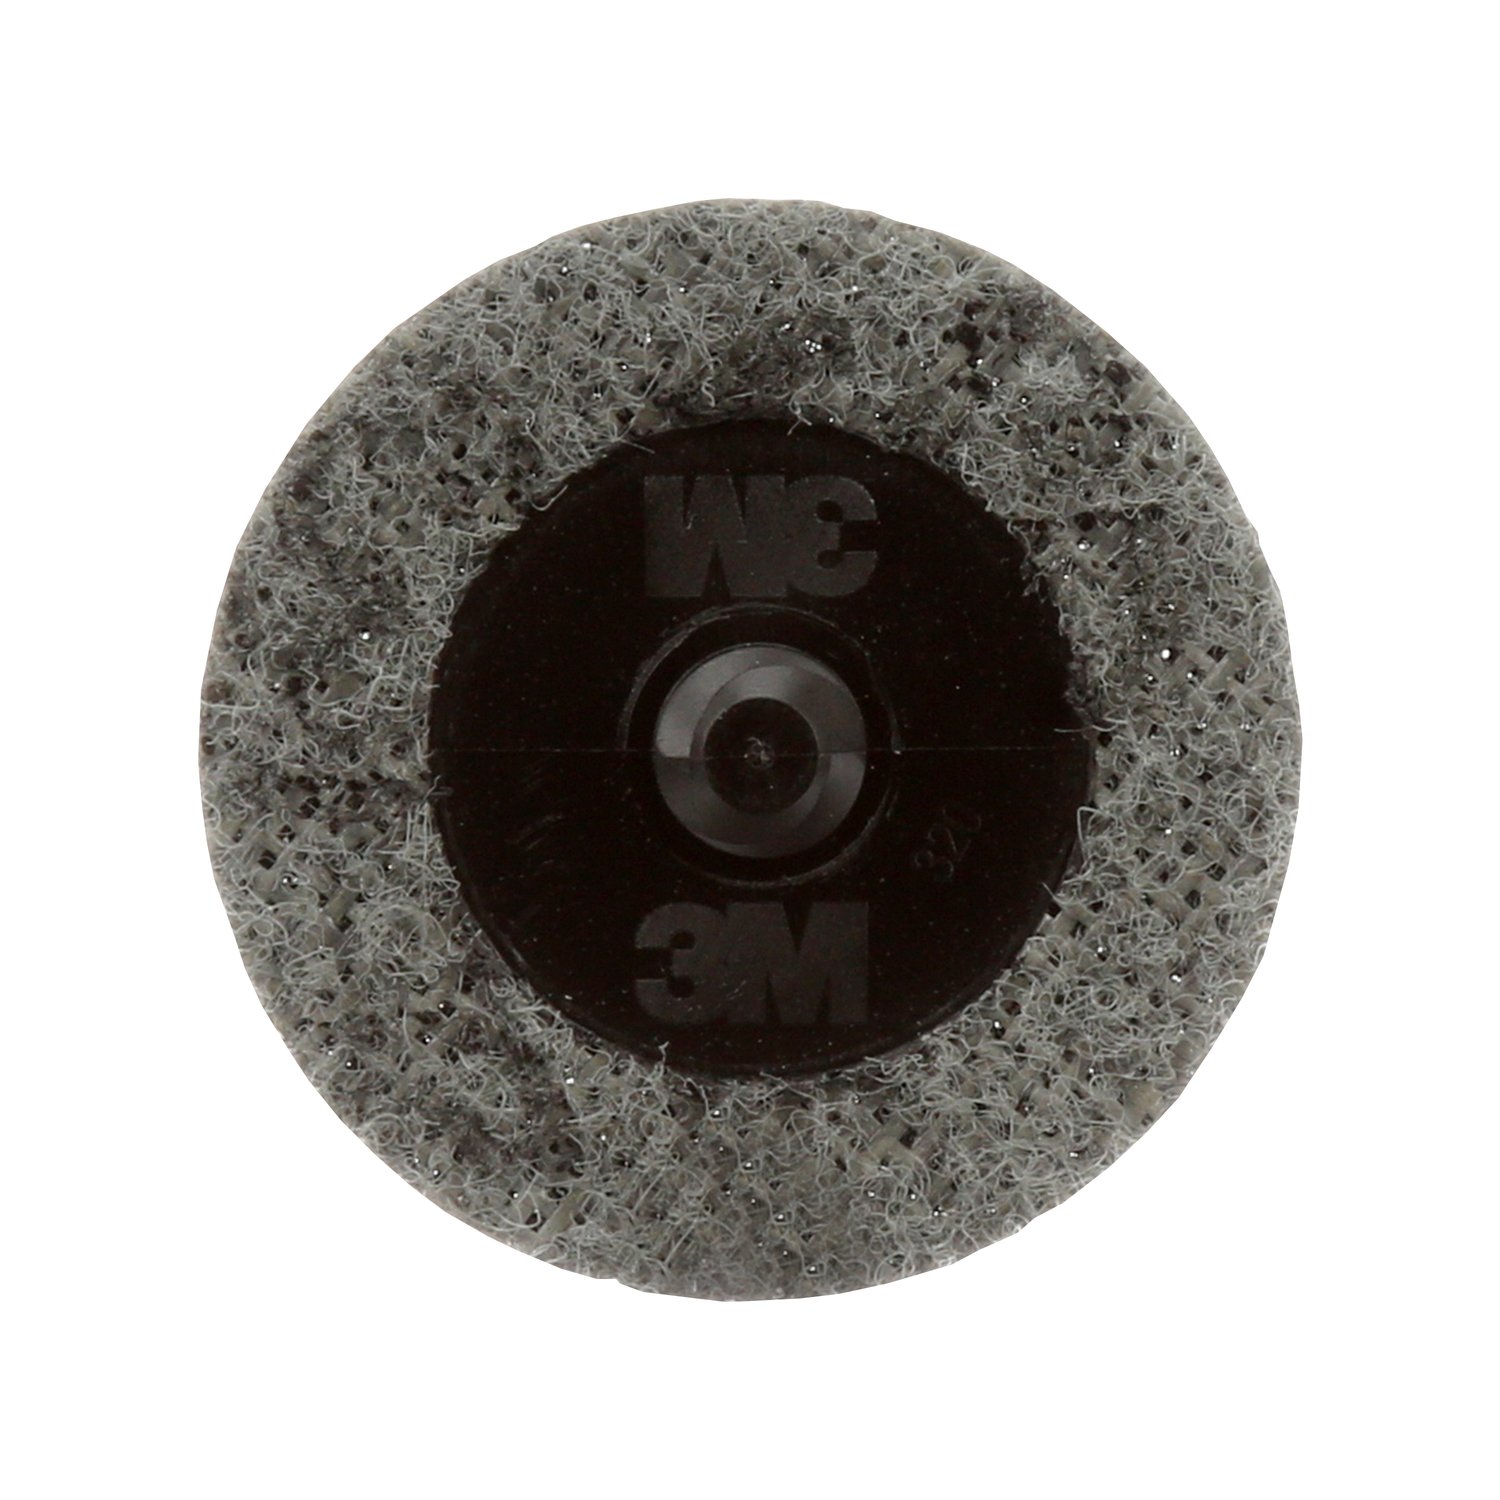 Mag Brite Acid Wheel and Rim Cleaner / 1 Gallon (128 oz.) 